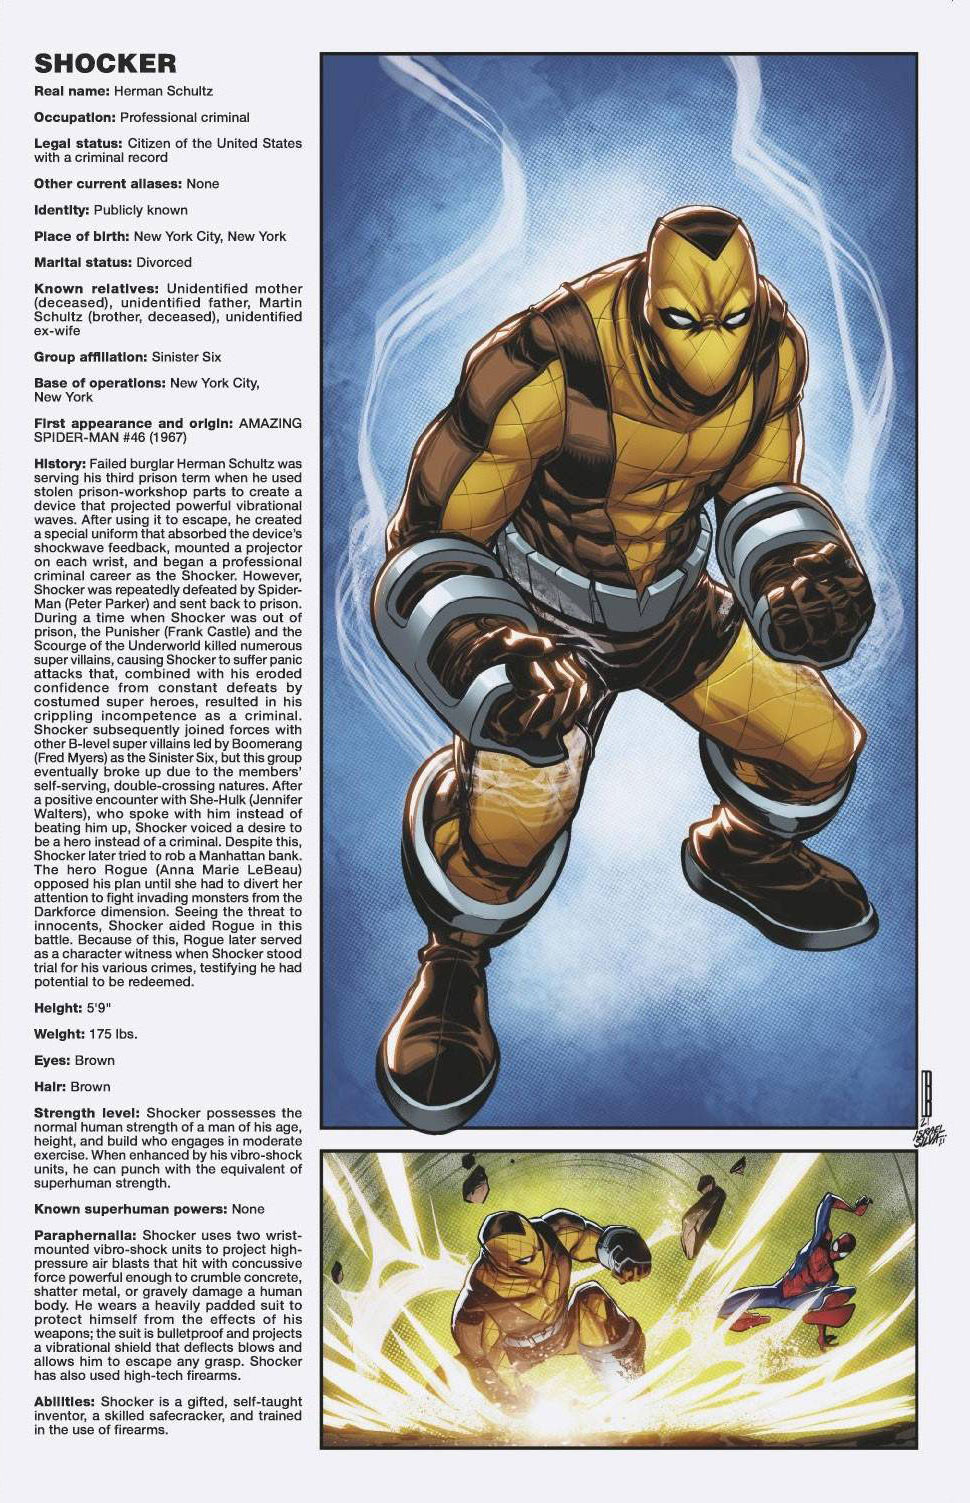 Amazing Spider-Man #73 Baldeon Handbook Variant Sinister War (2018)